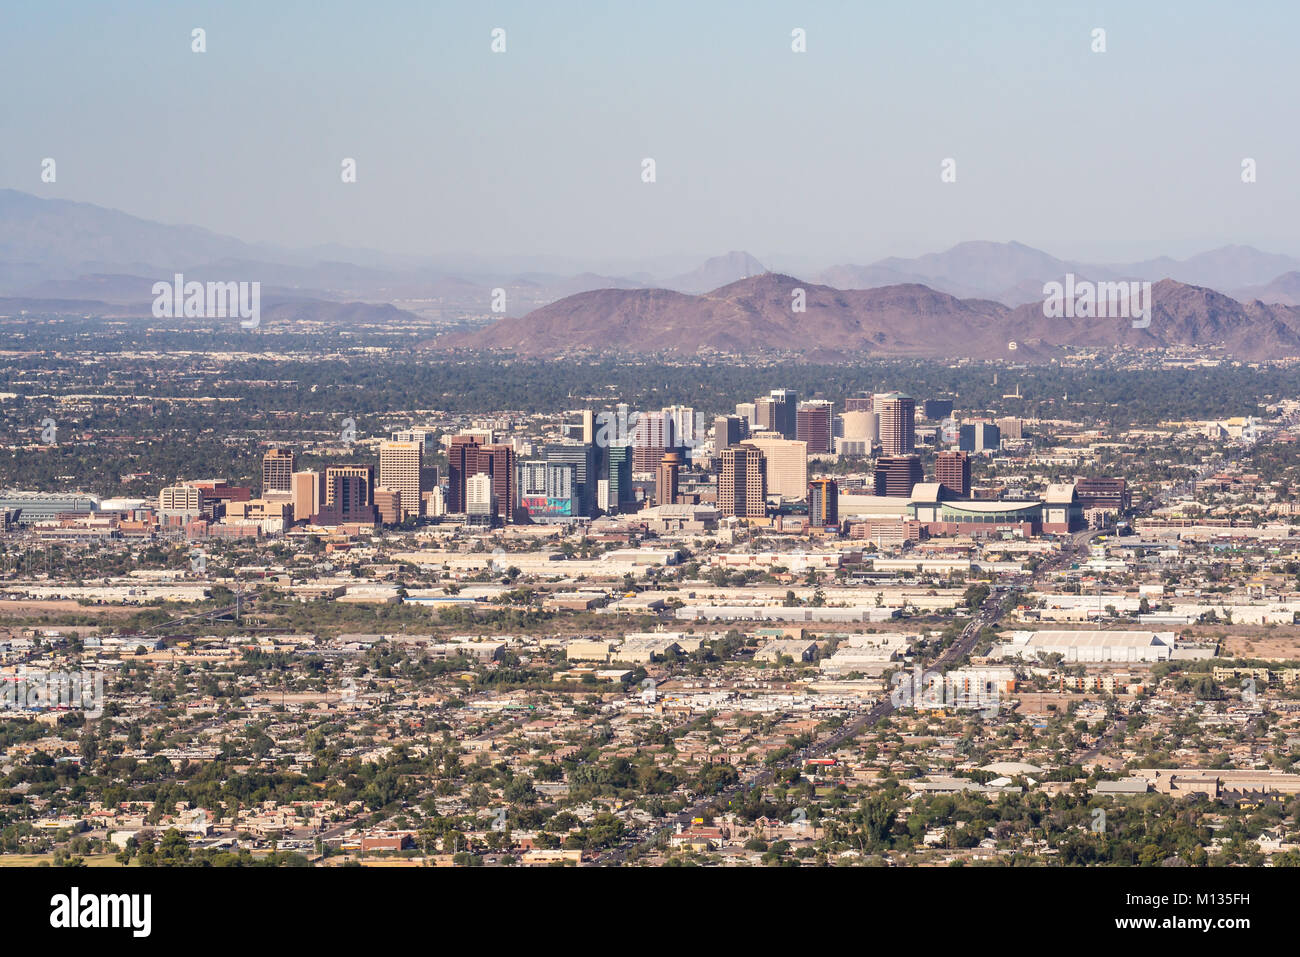 PHOENIX, AZ - 25. OKTOBER 2017: Skyline und Vorstadtausbreitung von Phoenix, Arizona von South Mountain. Stockfoto